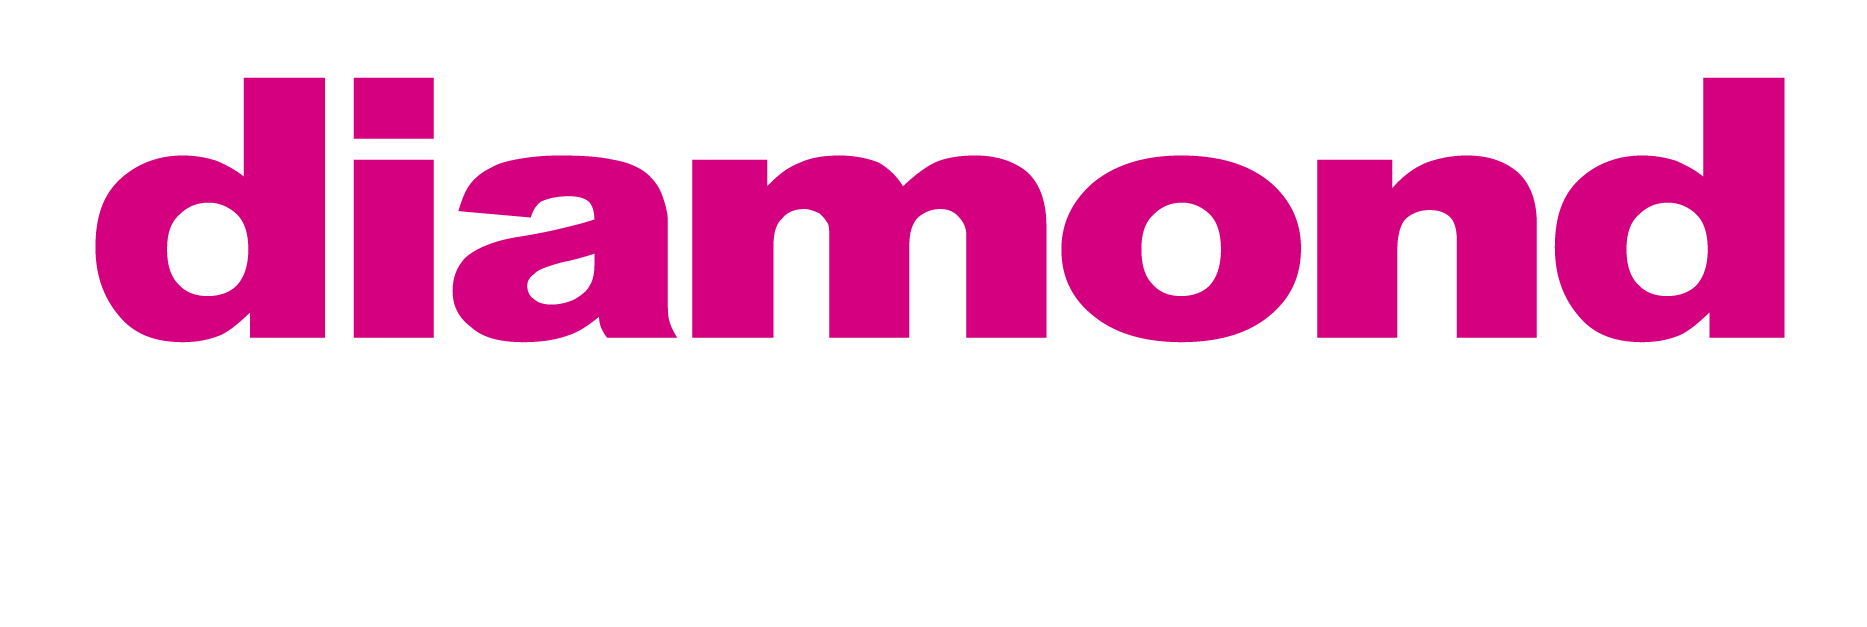 Diamond Network Partnership